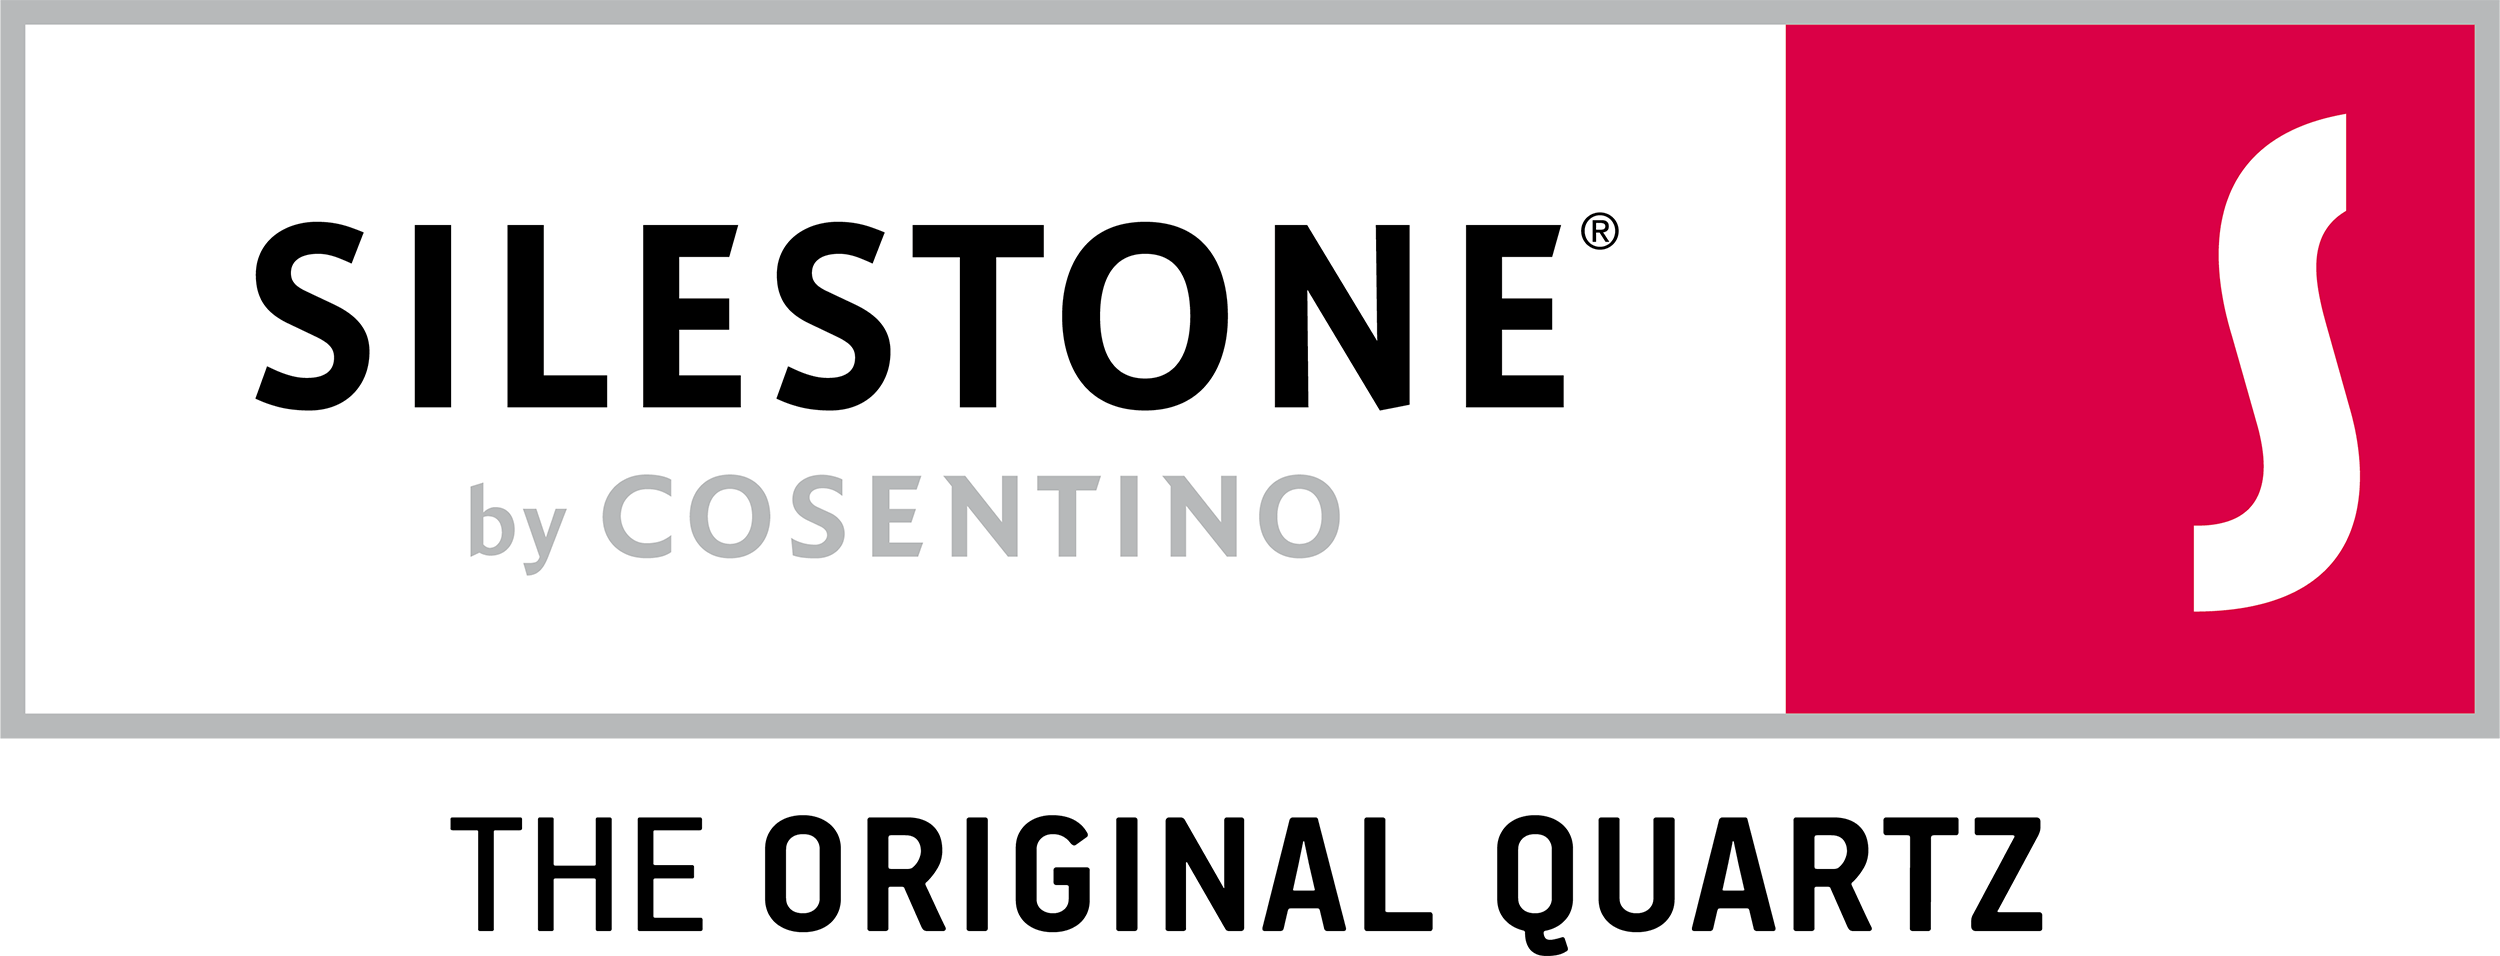 silestone logo.png